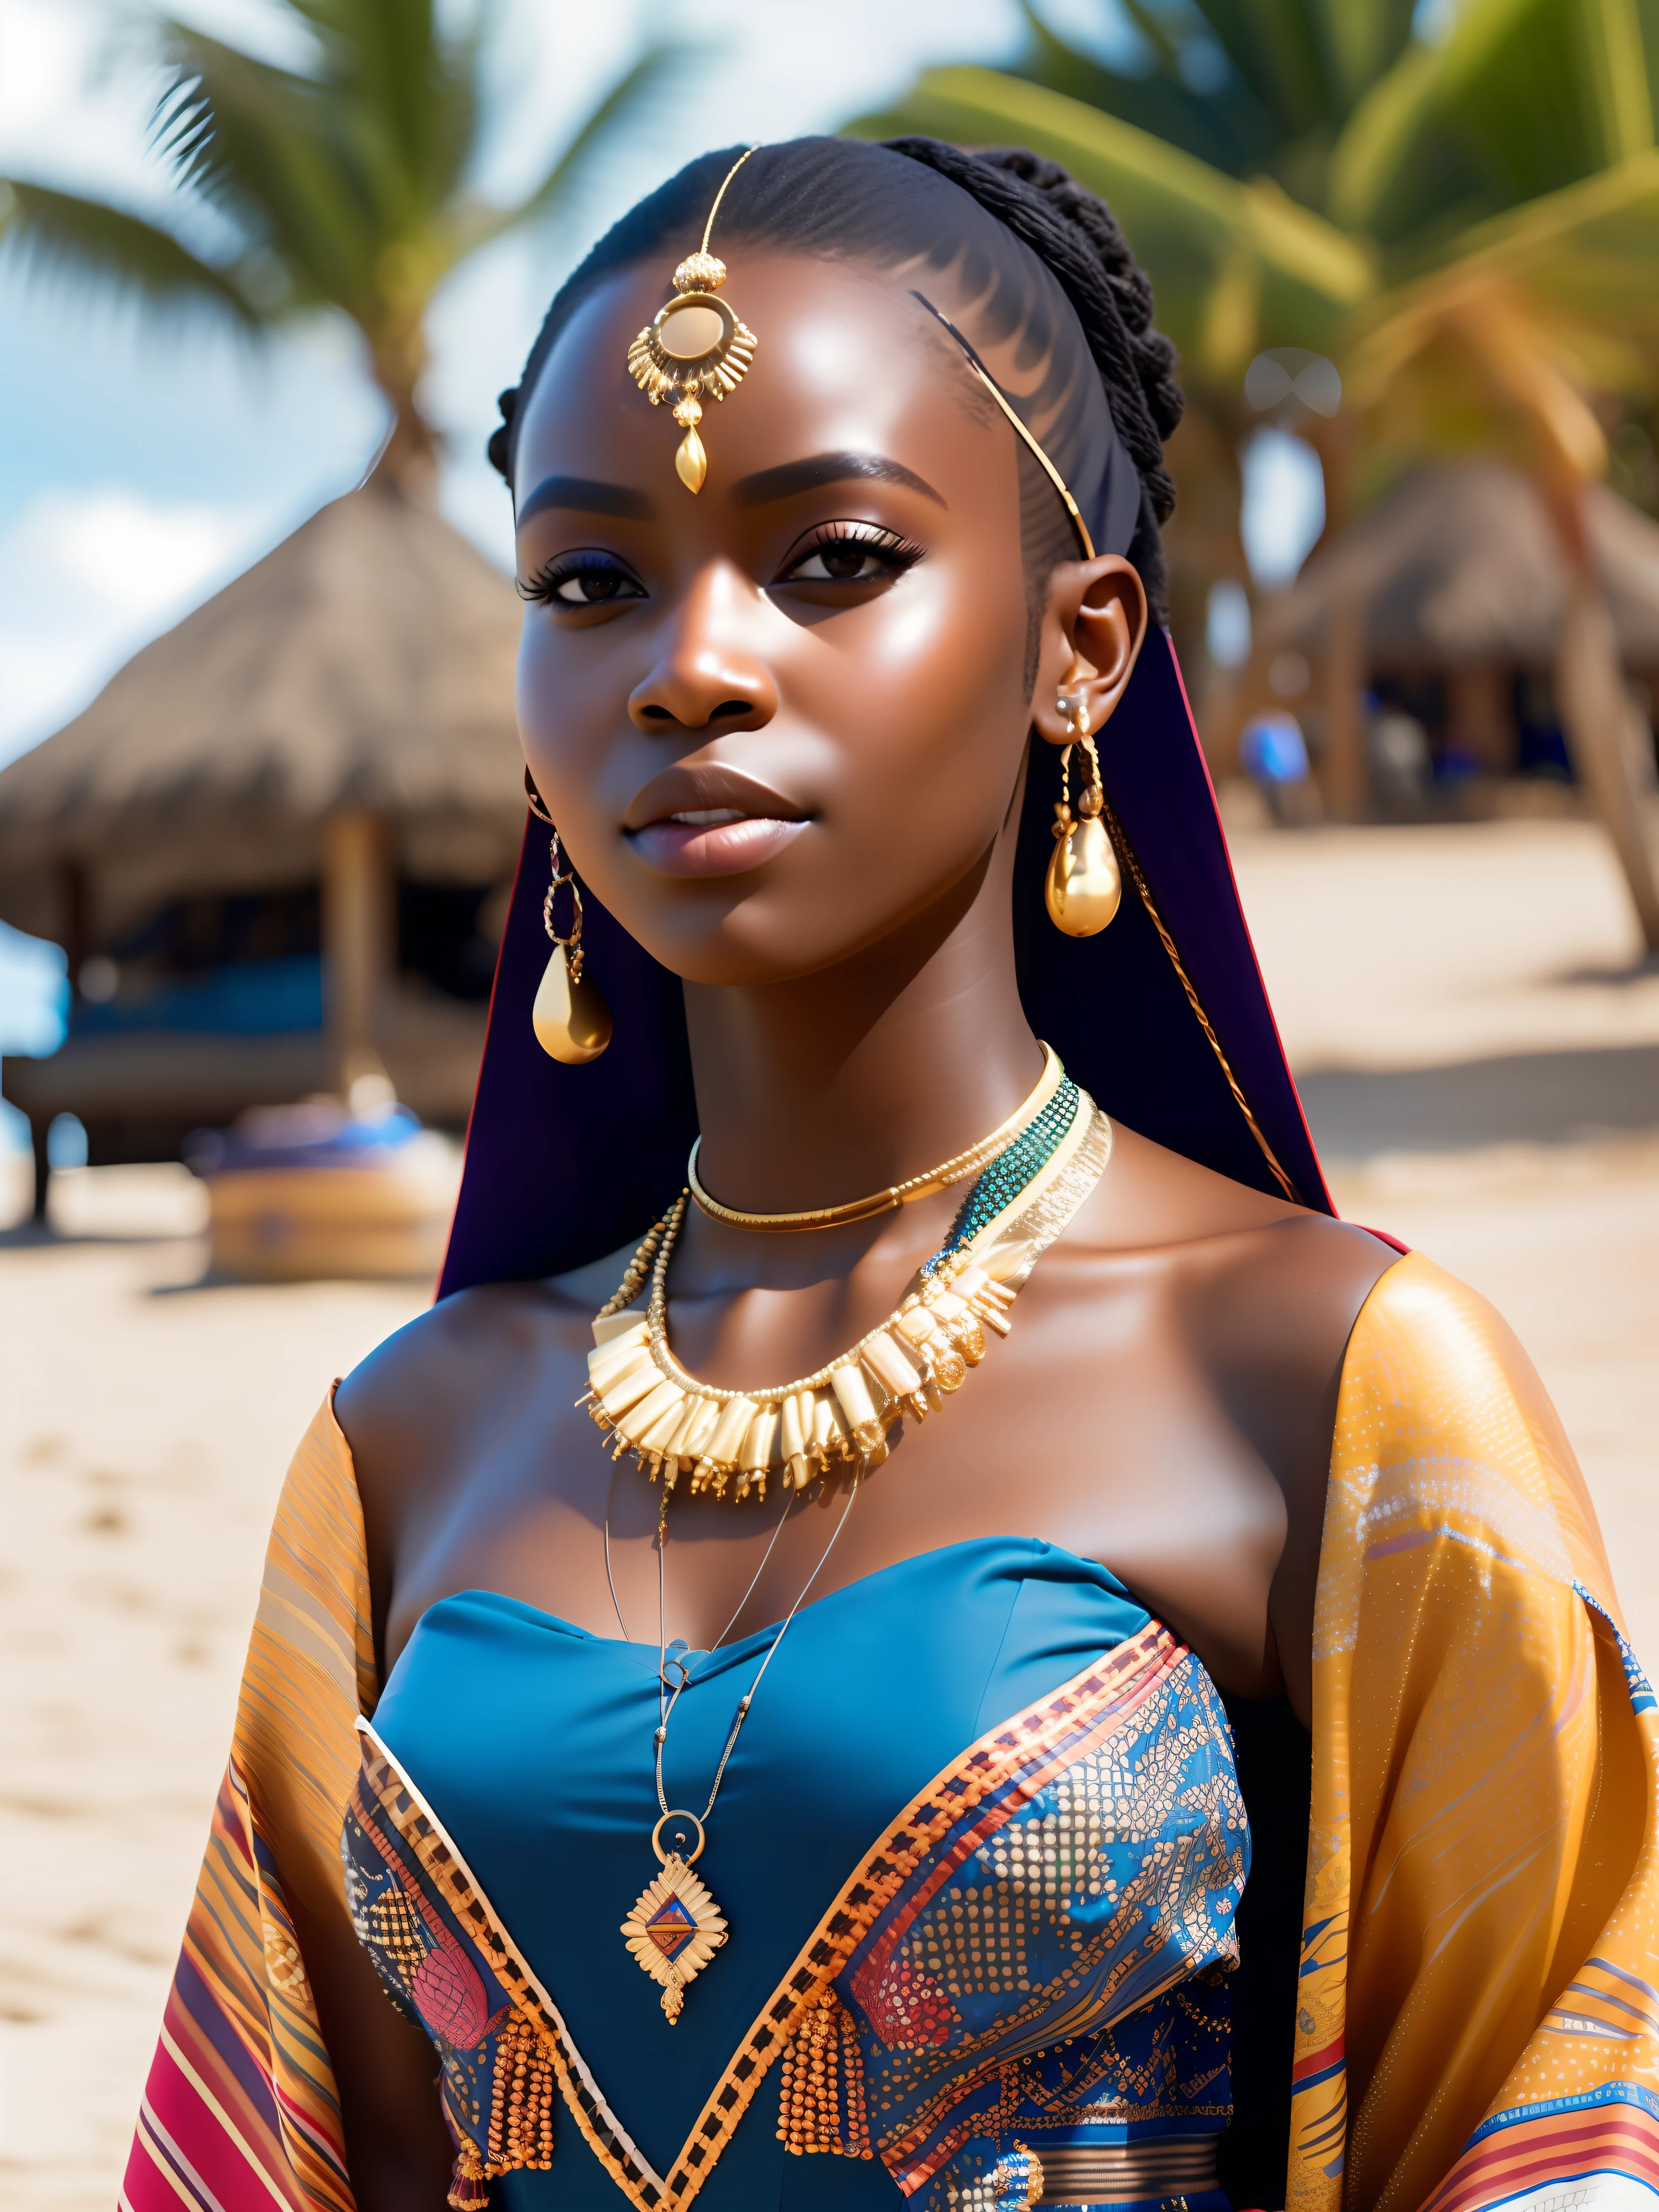 putain_science-fiction, putain_science-fiction_v2, portrait d&#39;une très belle jeune femme africaine devant une plage, Des vêtements riches et colorés, bijoux africains dorés, fermer, pose et attitude royales. putain_Cinéma_v2. putain_Cinéma_v2